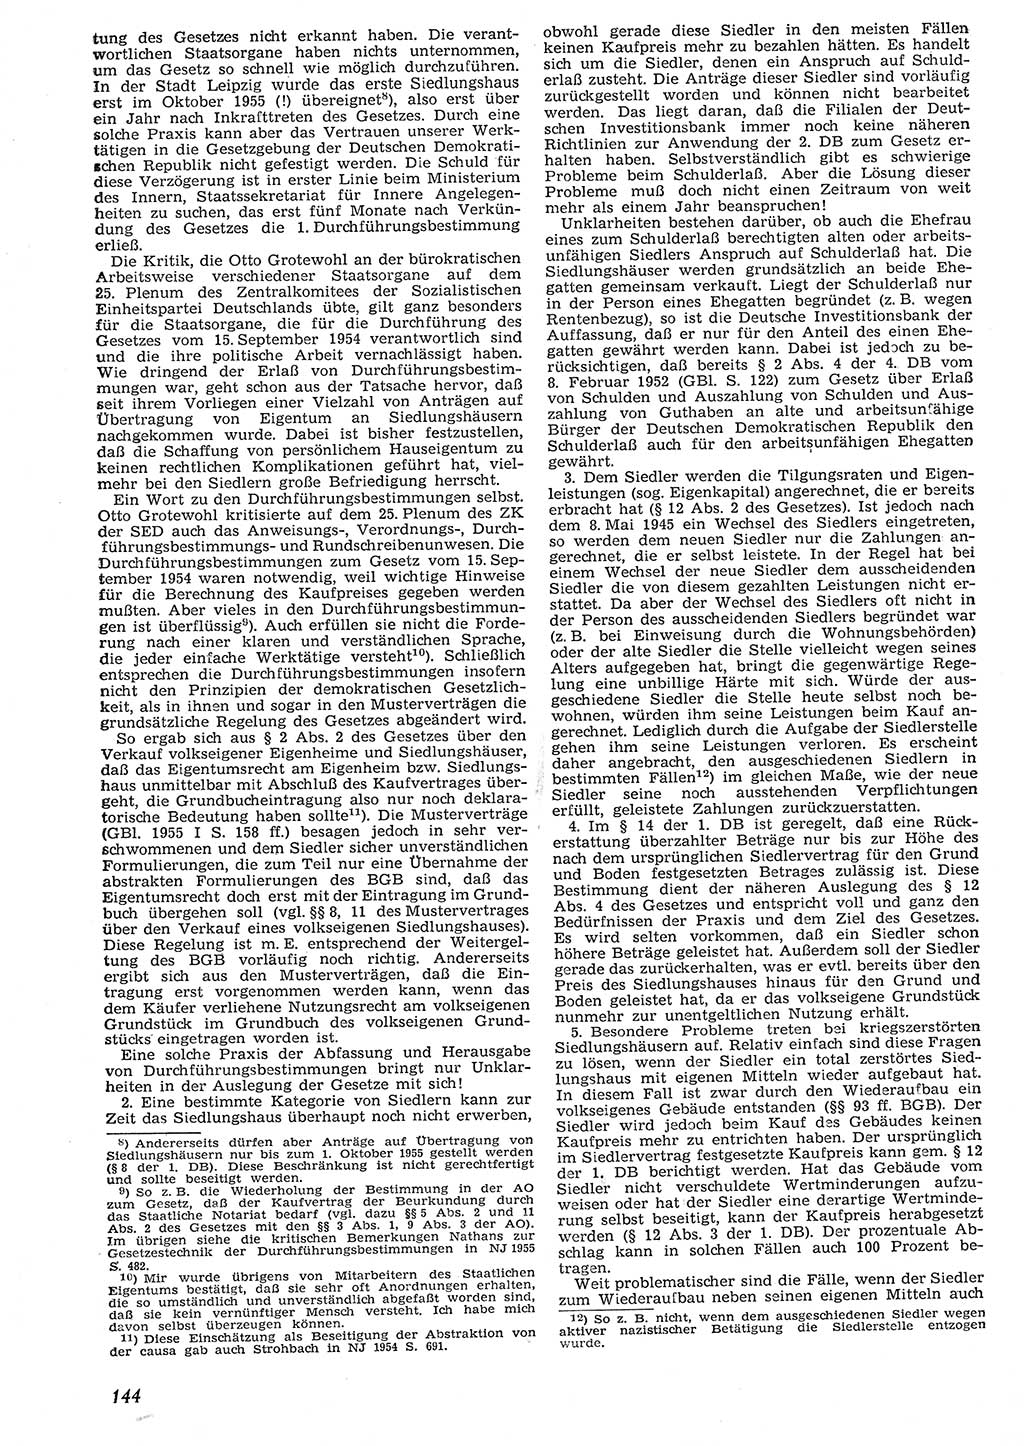 Neue Justiz (NJ), Zeitschrift für Recht und Rechtswissenschaft [Deutsche Demokratische Republik (DDR)], 10. Jahrgang 1956, Seite 144 (NJ DDR 1956, S. 144)